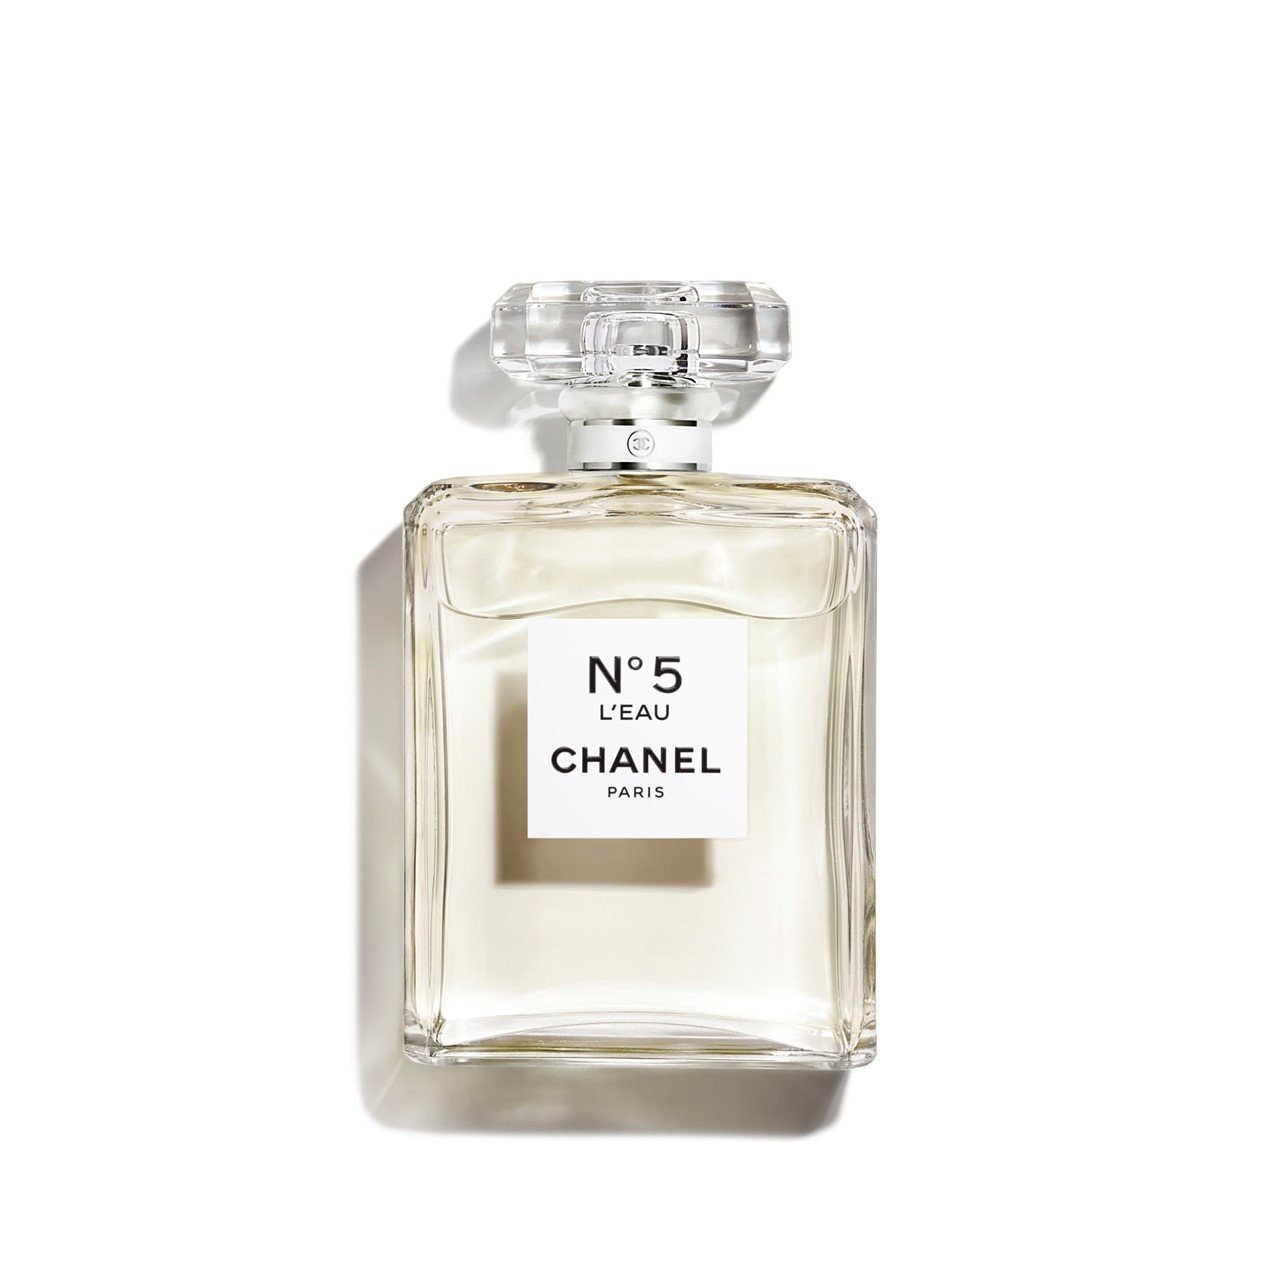 Chanel No. 5 L'eau 6.8 oz Eau de Toilette Spray